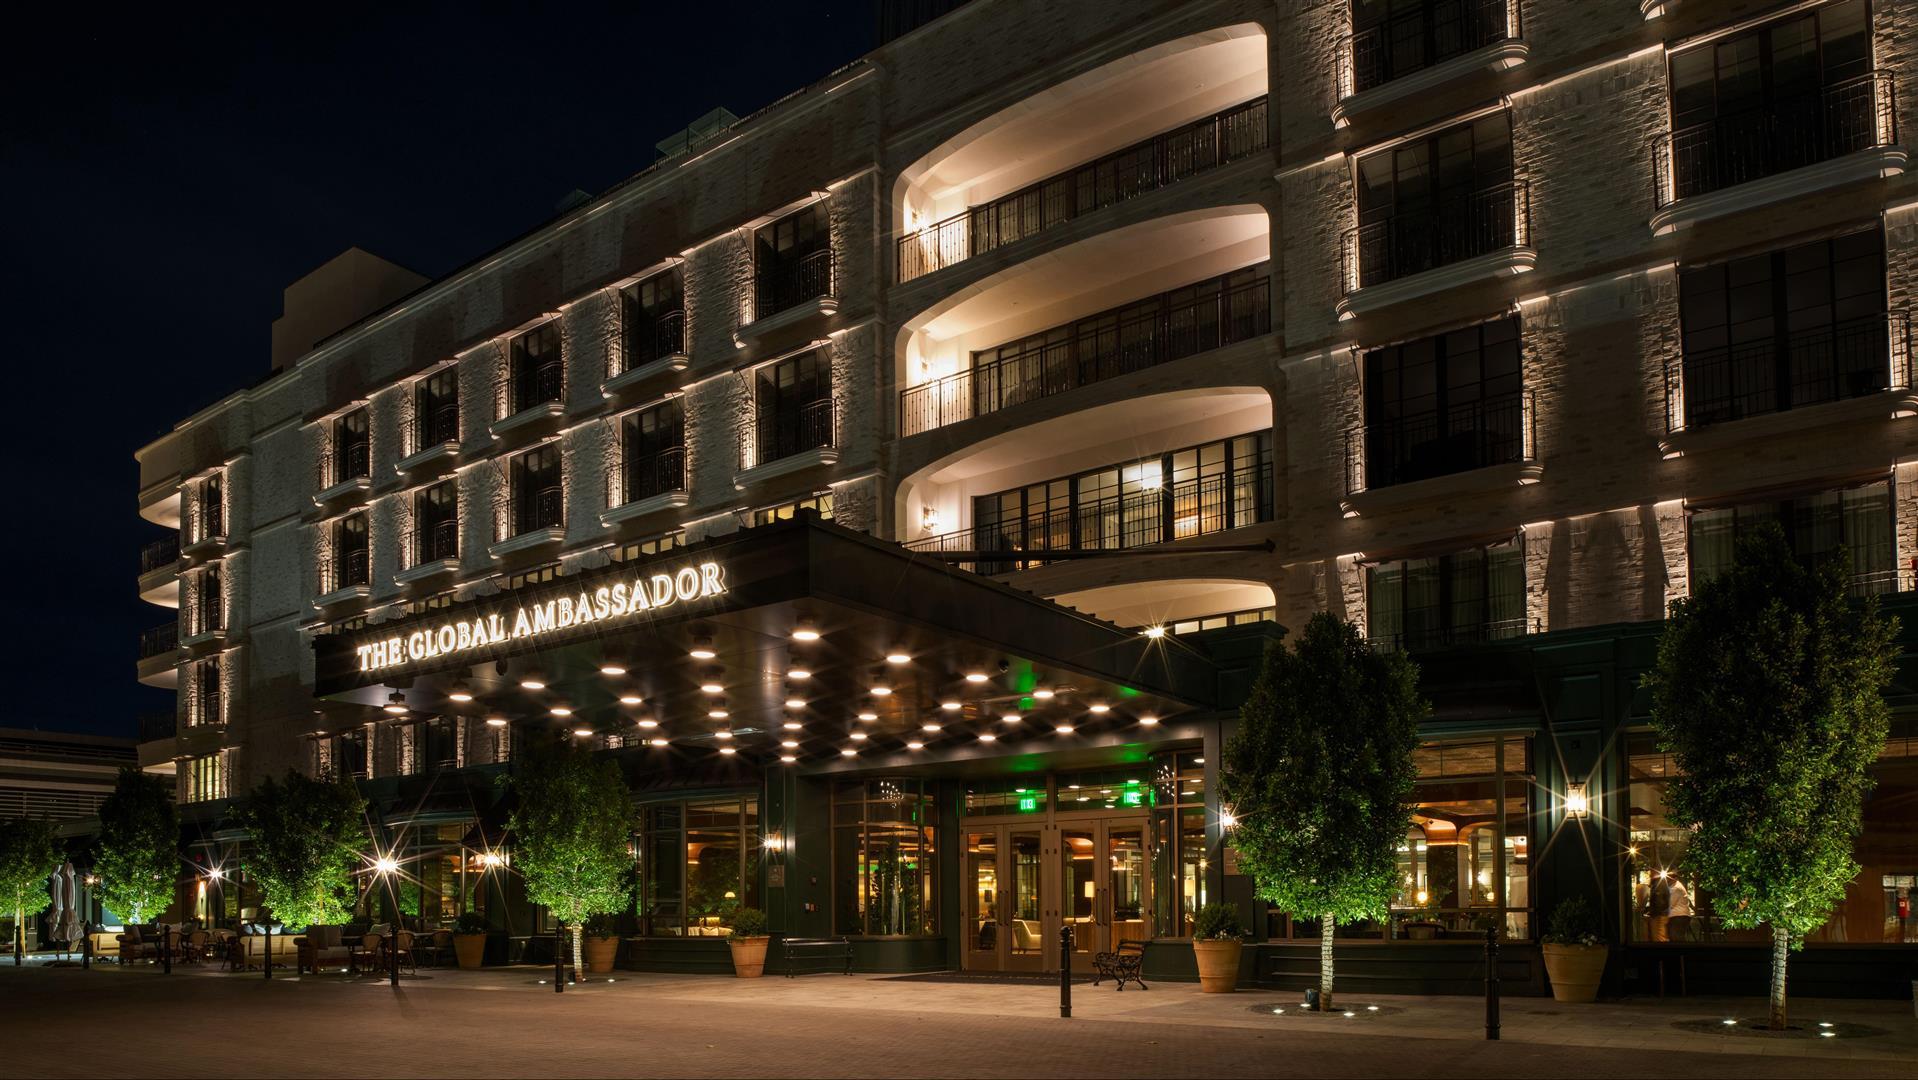 Global Ambassador Hotel in Phoenix, AZ